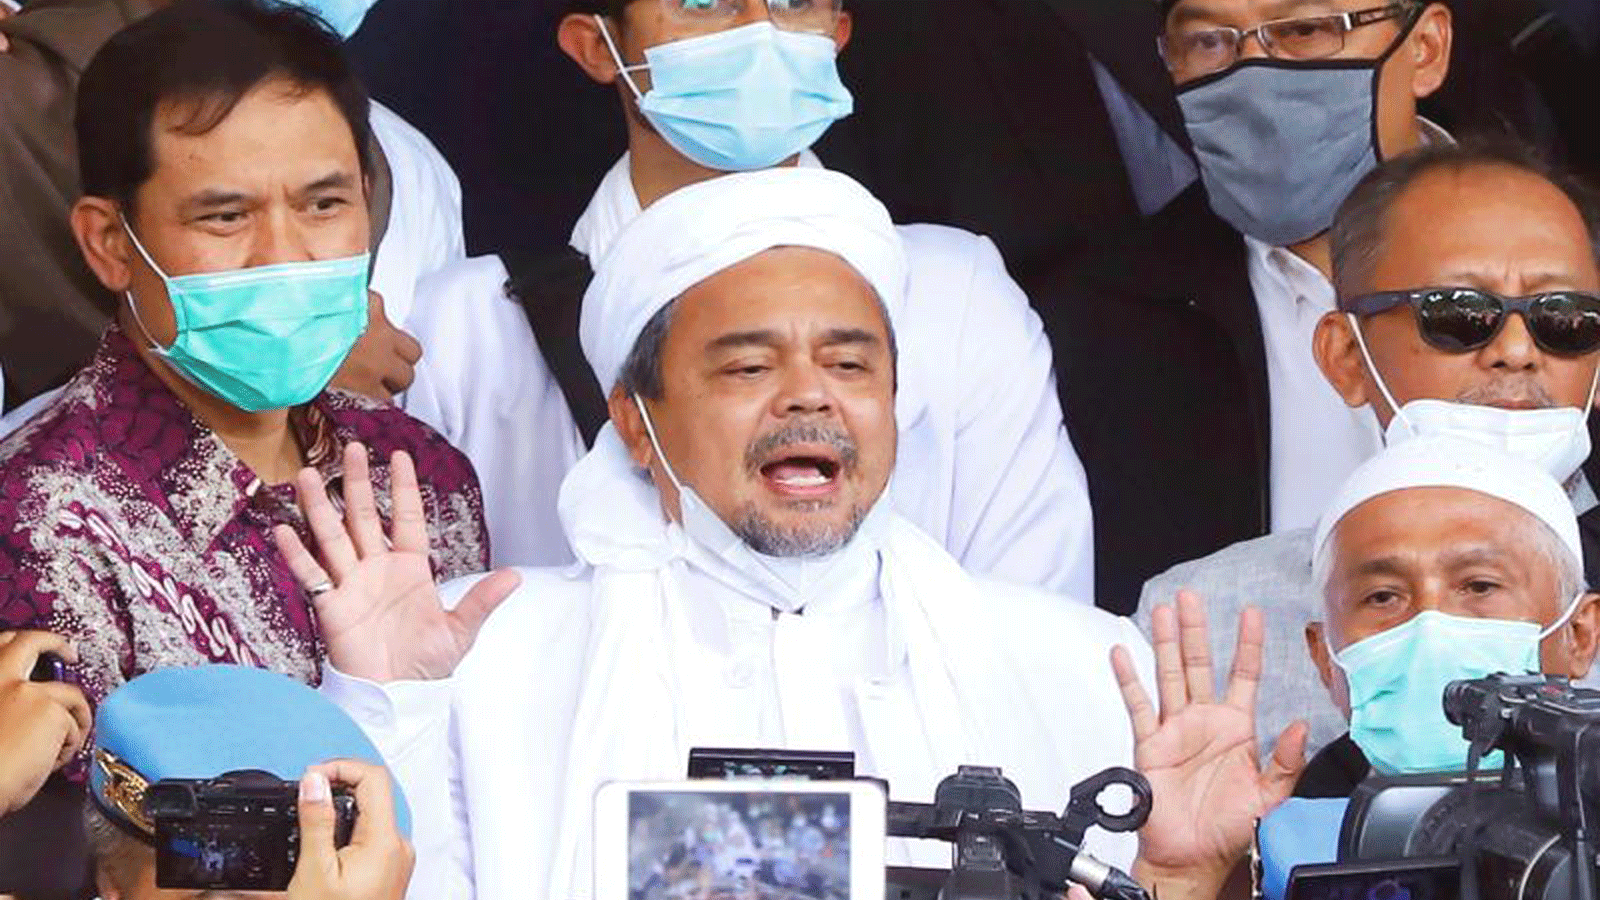 رجل الدين المسلم الإندونيسي رزيق شهاب، وسط الصورة، يحيط به أنصاره لدى وصوله إلى مقر الشرطة في جاكرتا يوم السبت، قبل اعتقاله.